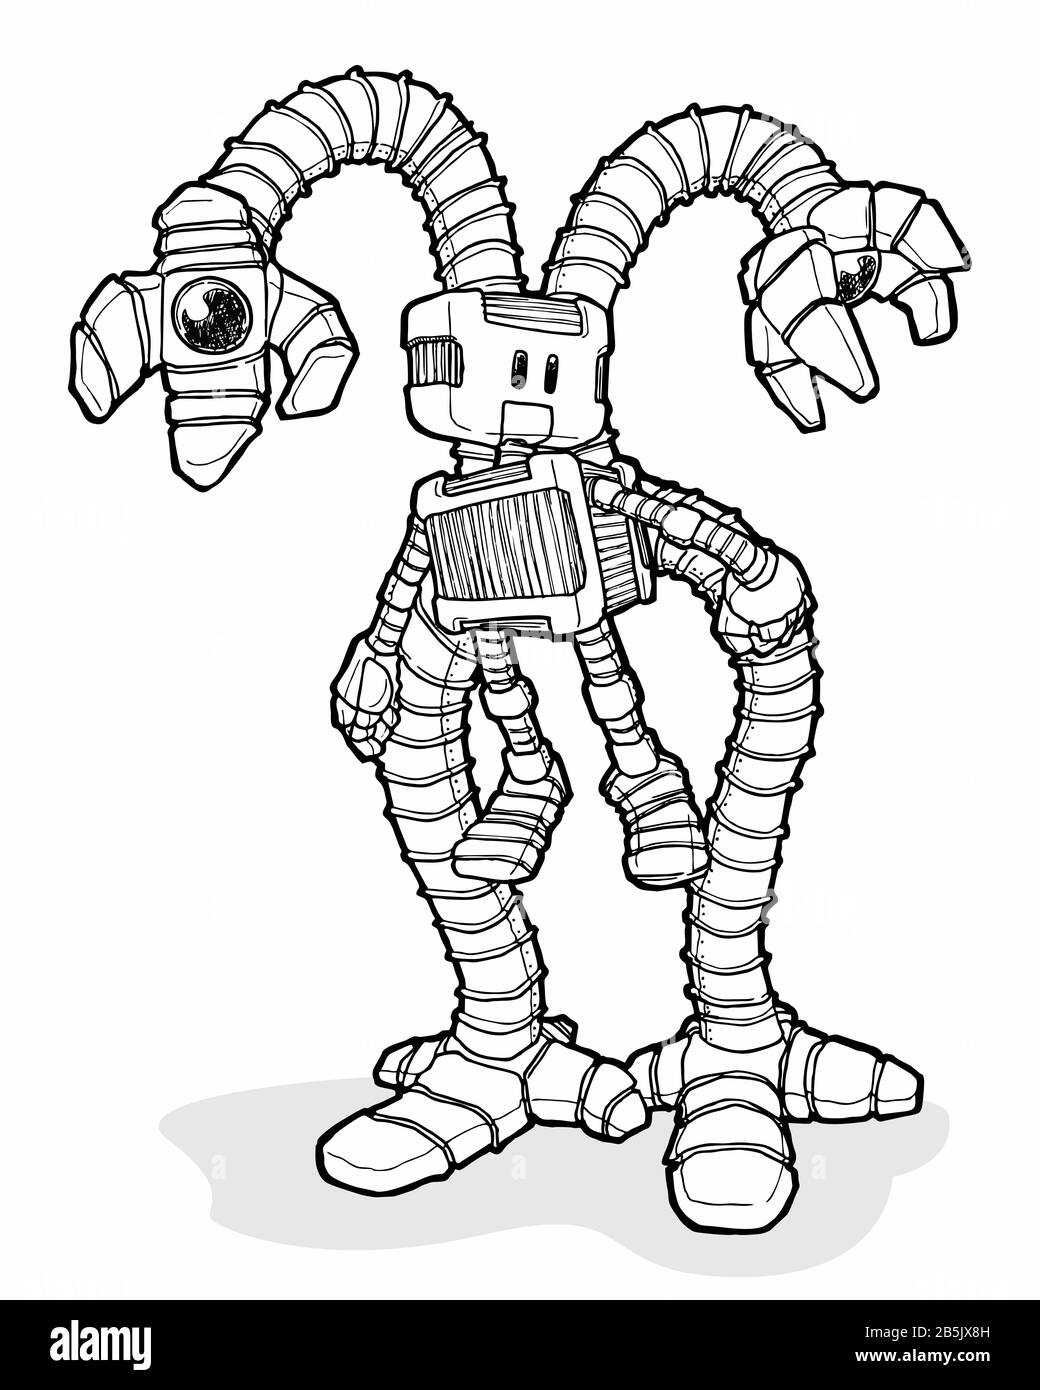 Farbzeichnung des Roboters mit langen Zusatzarmen. Artistic Cartoon Style Manuelle Illustration. Technologie, Robotik, Künstliche Intelligenz. Stockfoto